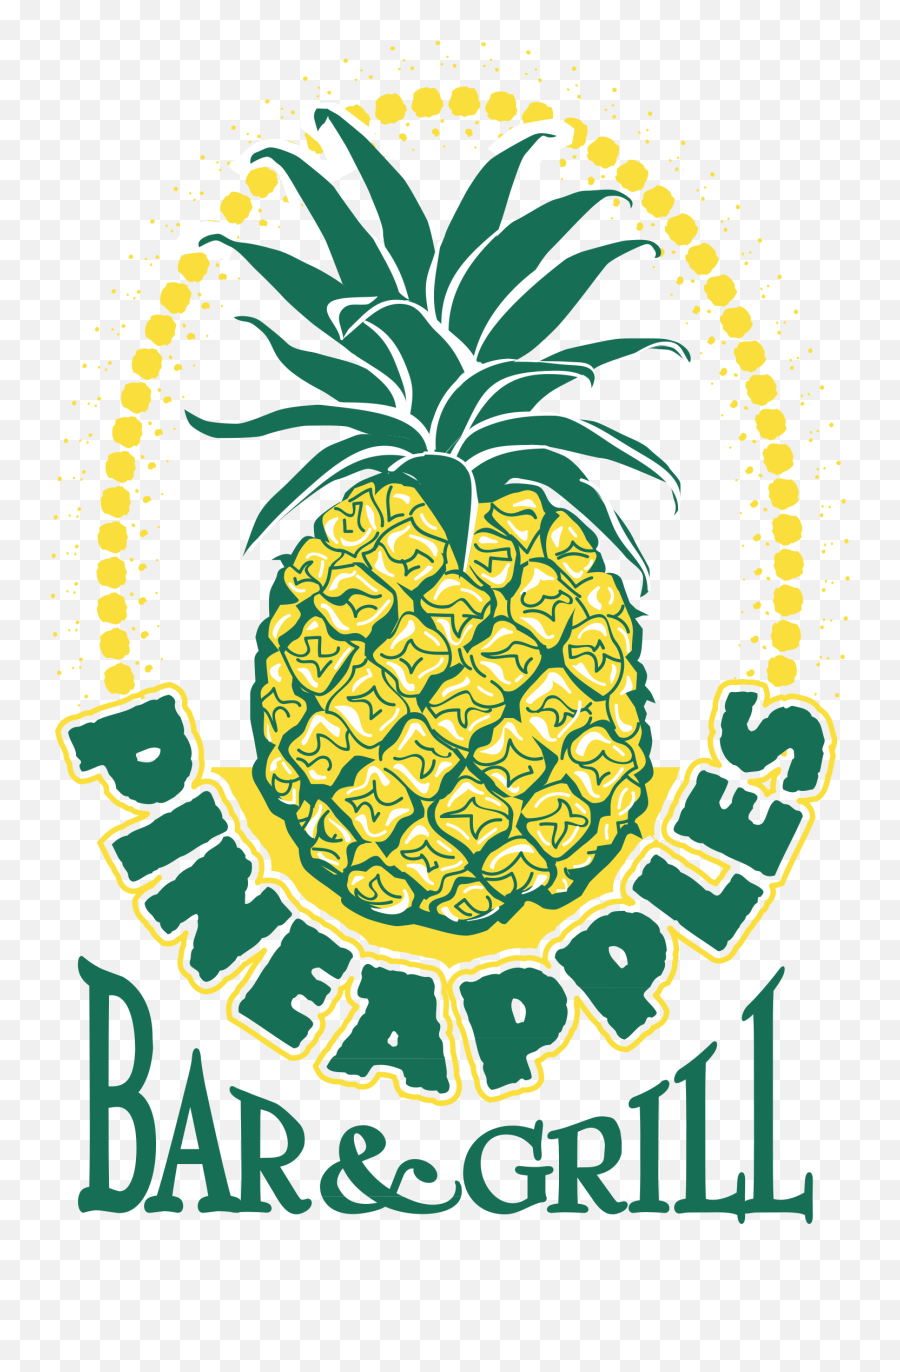 Pineapples Logo Png Transparent U0026 Svg Vector - Freebie Supply Pineapple Vector Logo,Pineapple Transparent